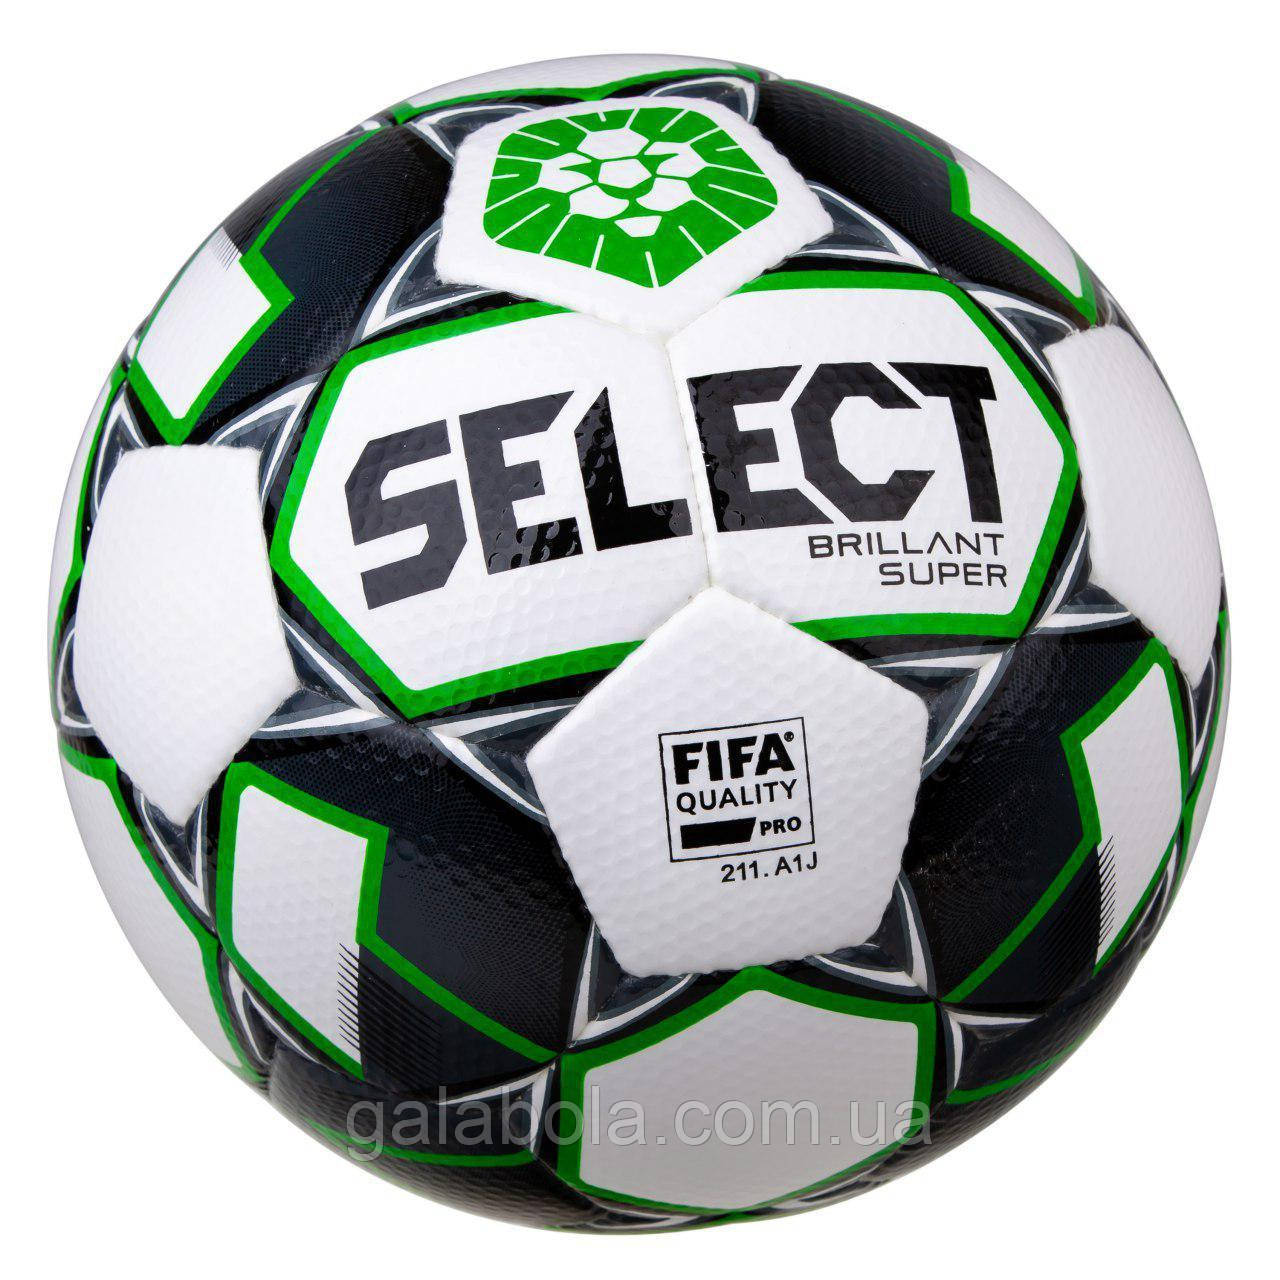 М'яч футбольний Select Brillant Super PFL (розмір 5)